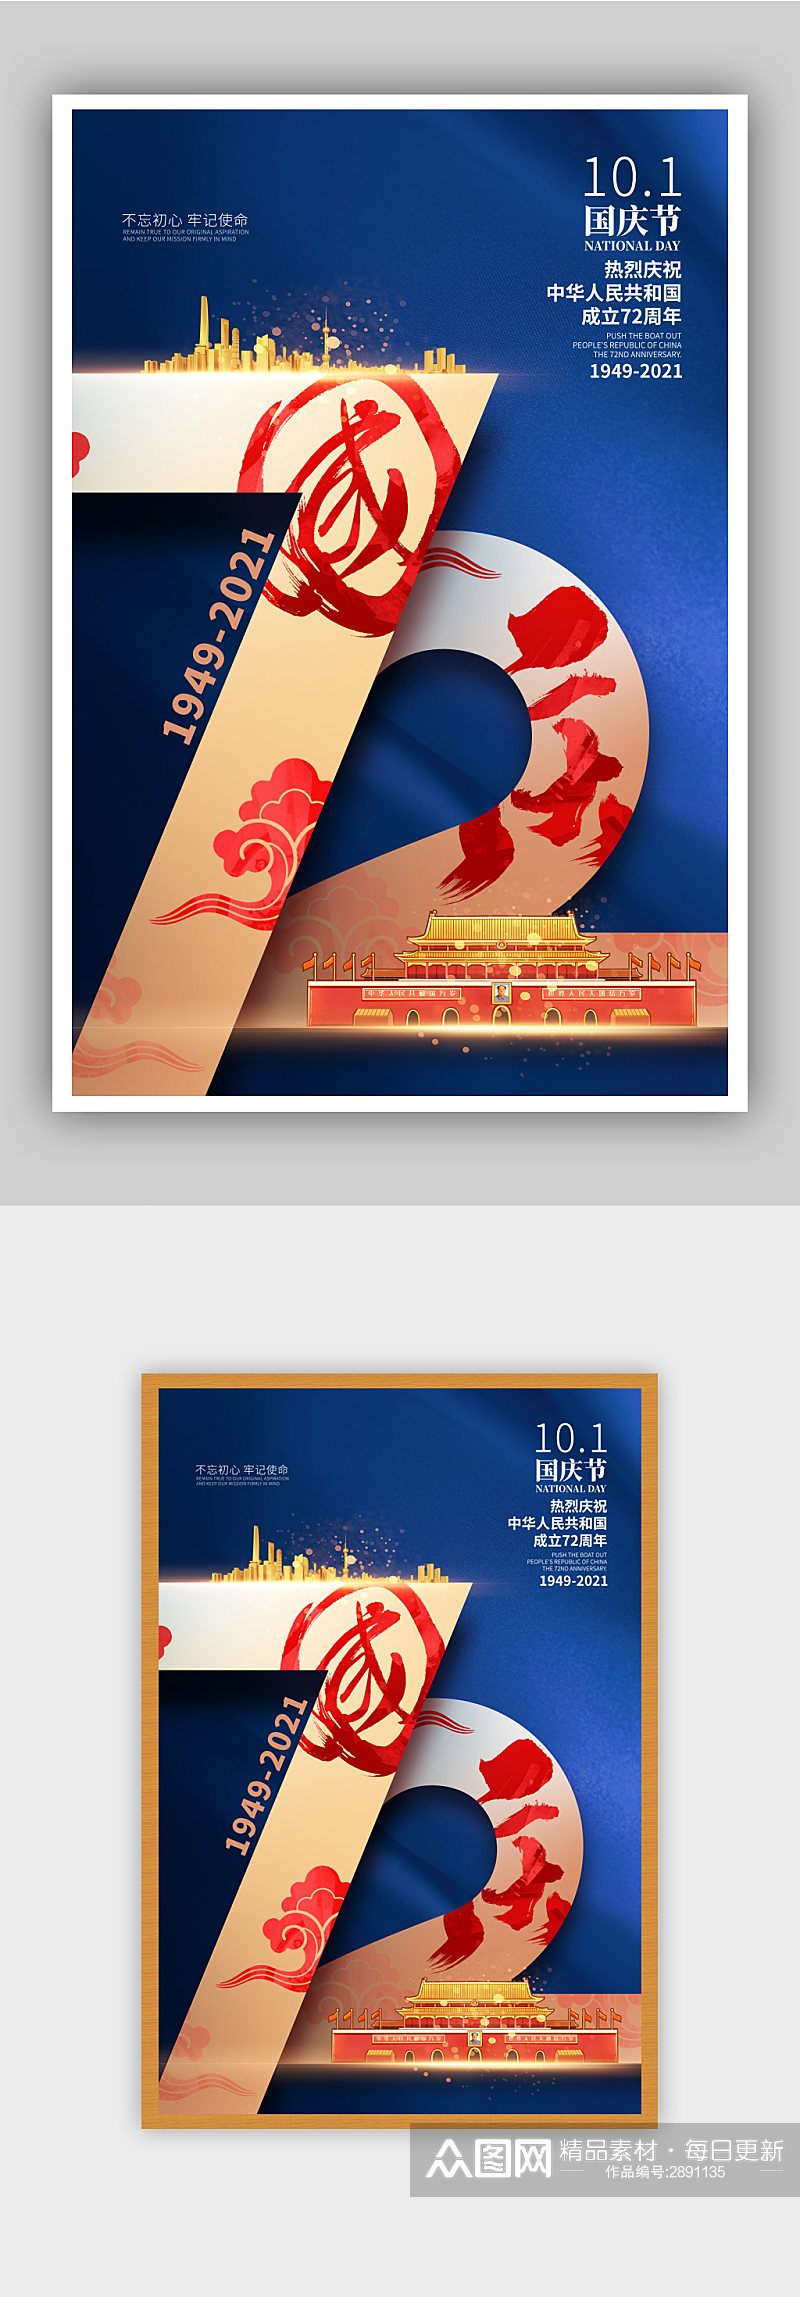 蓝色大气国庆节庆祝建国72周年国庆海报素材